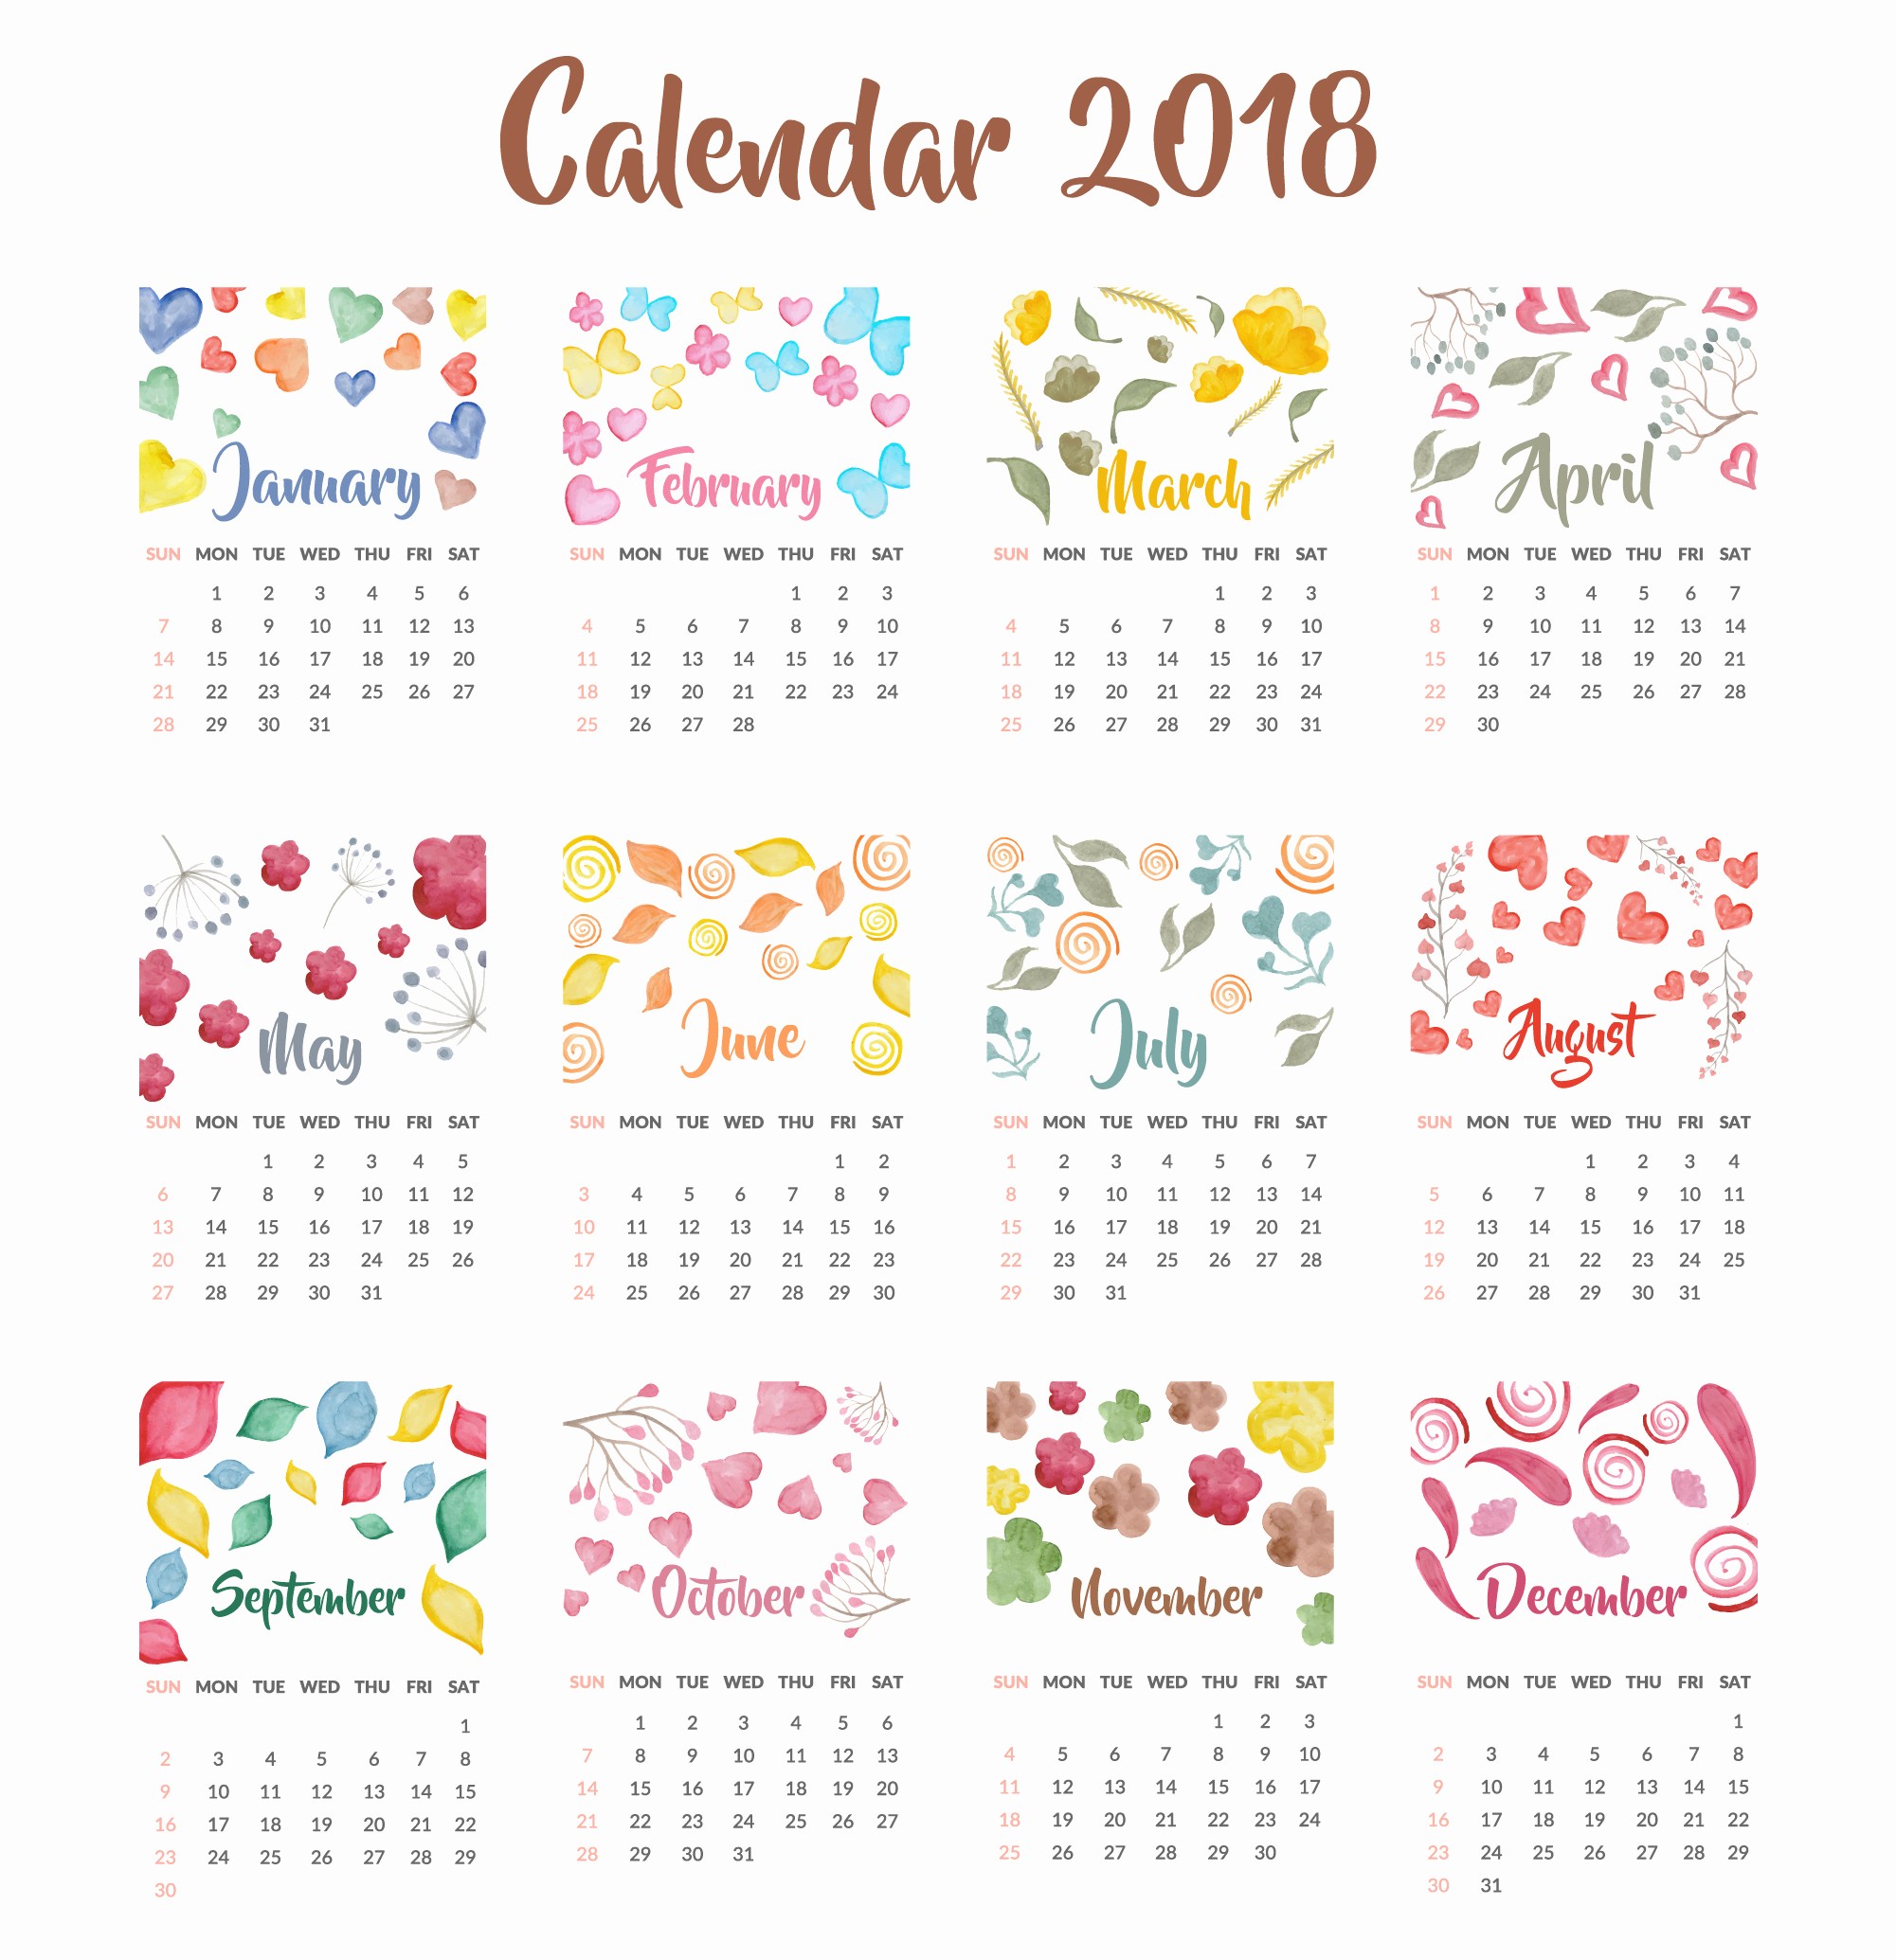 2018 year calendar wallpaper free 2018 calendar by month